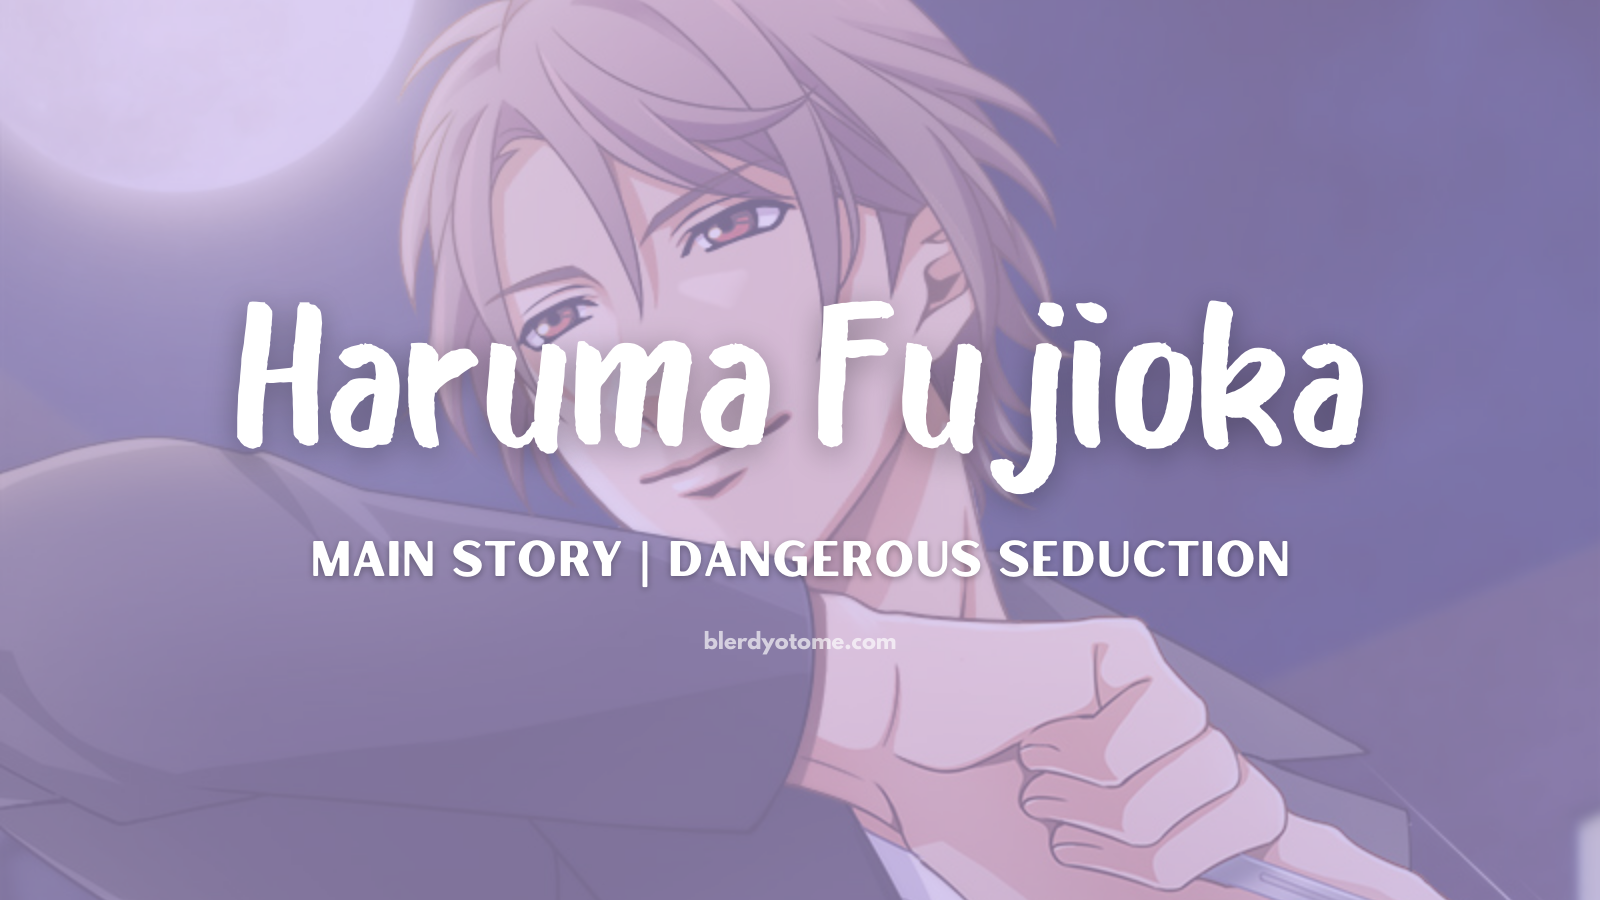 Dangerous Seduction Haruma Fujioka